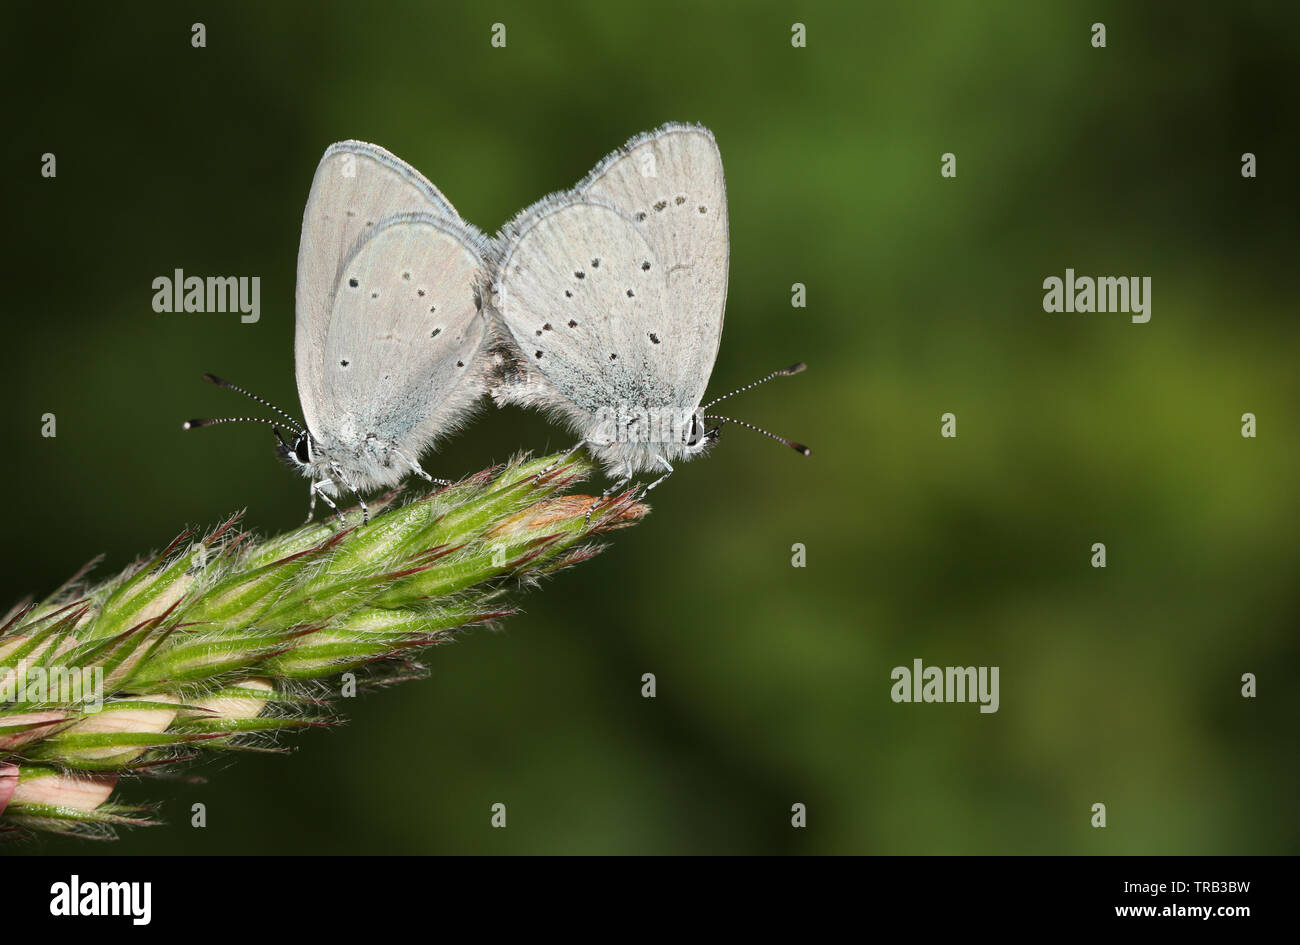 Ein paar der seltenen kleinen blauen Schmetterling Cupido minimus, hocken auf der Spitze einer Esparsette, onobrychis, Blume. Stockfoto